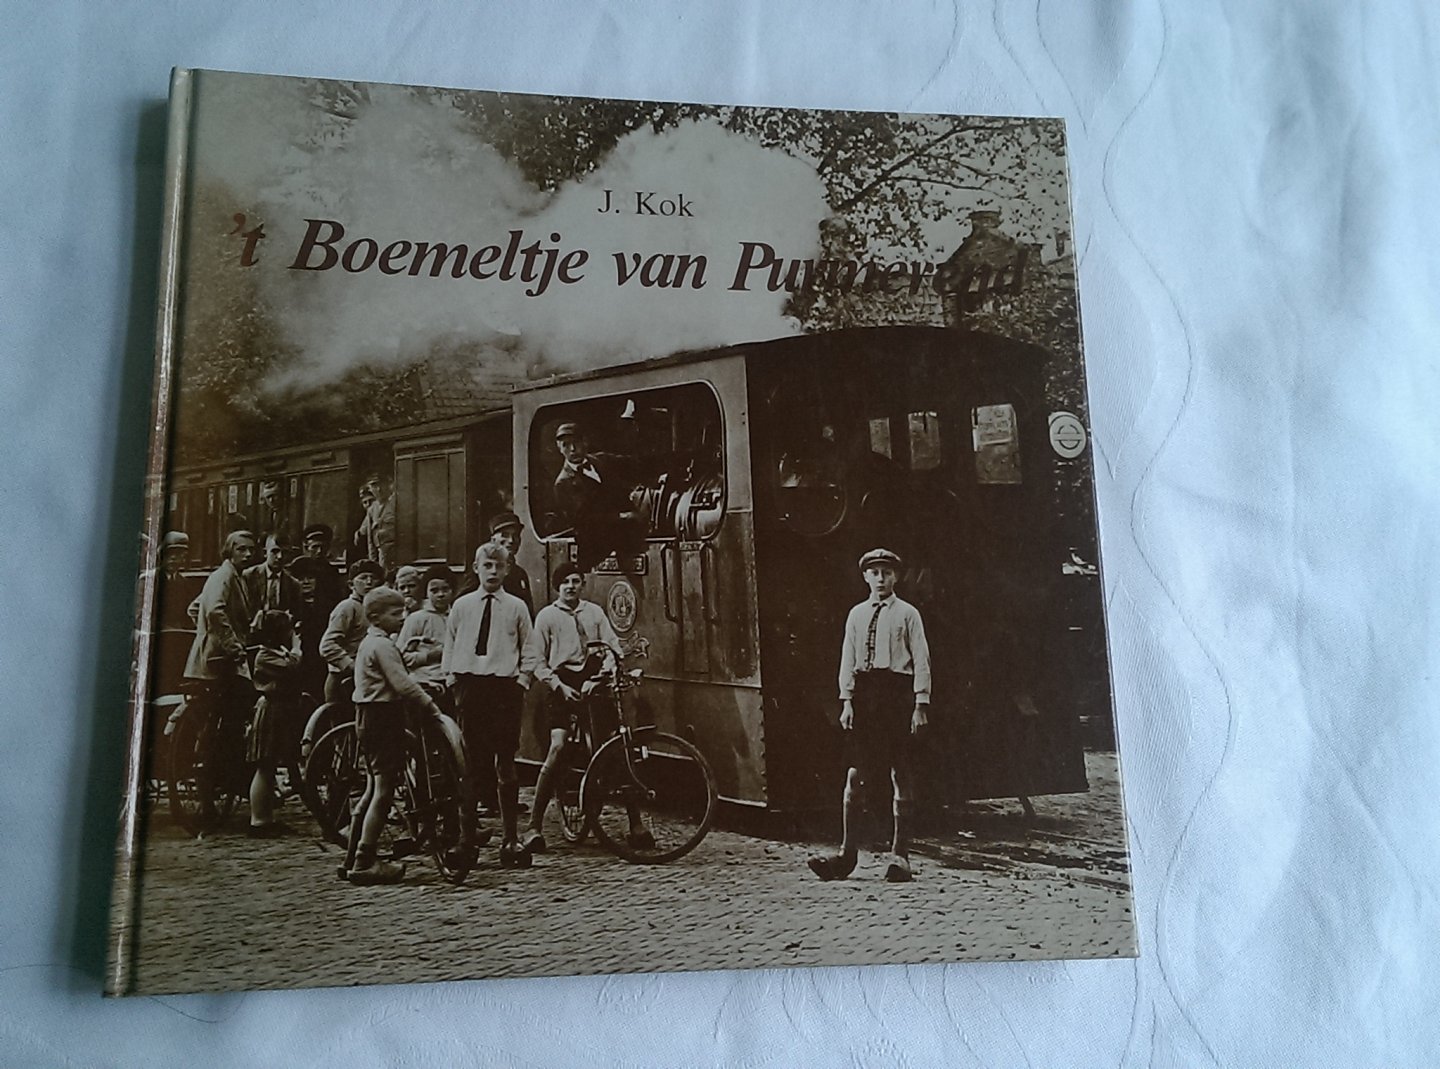 Kok, J. - 't Boemeltje van Purmerend. Boot-, tram-en treinverbindingen tussen Amsterdam en Waterland, alsmede de stoomtram Purmerend-Alkmaar